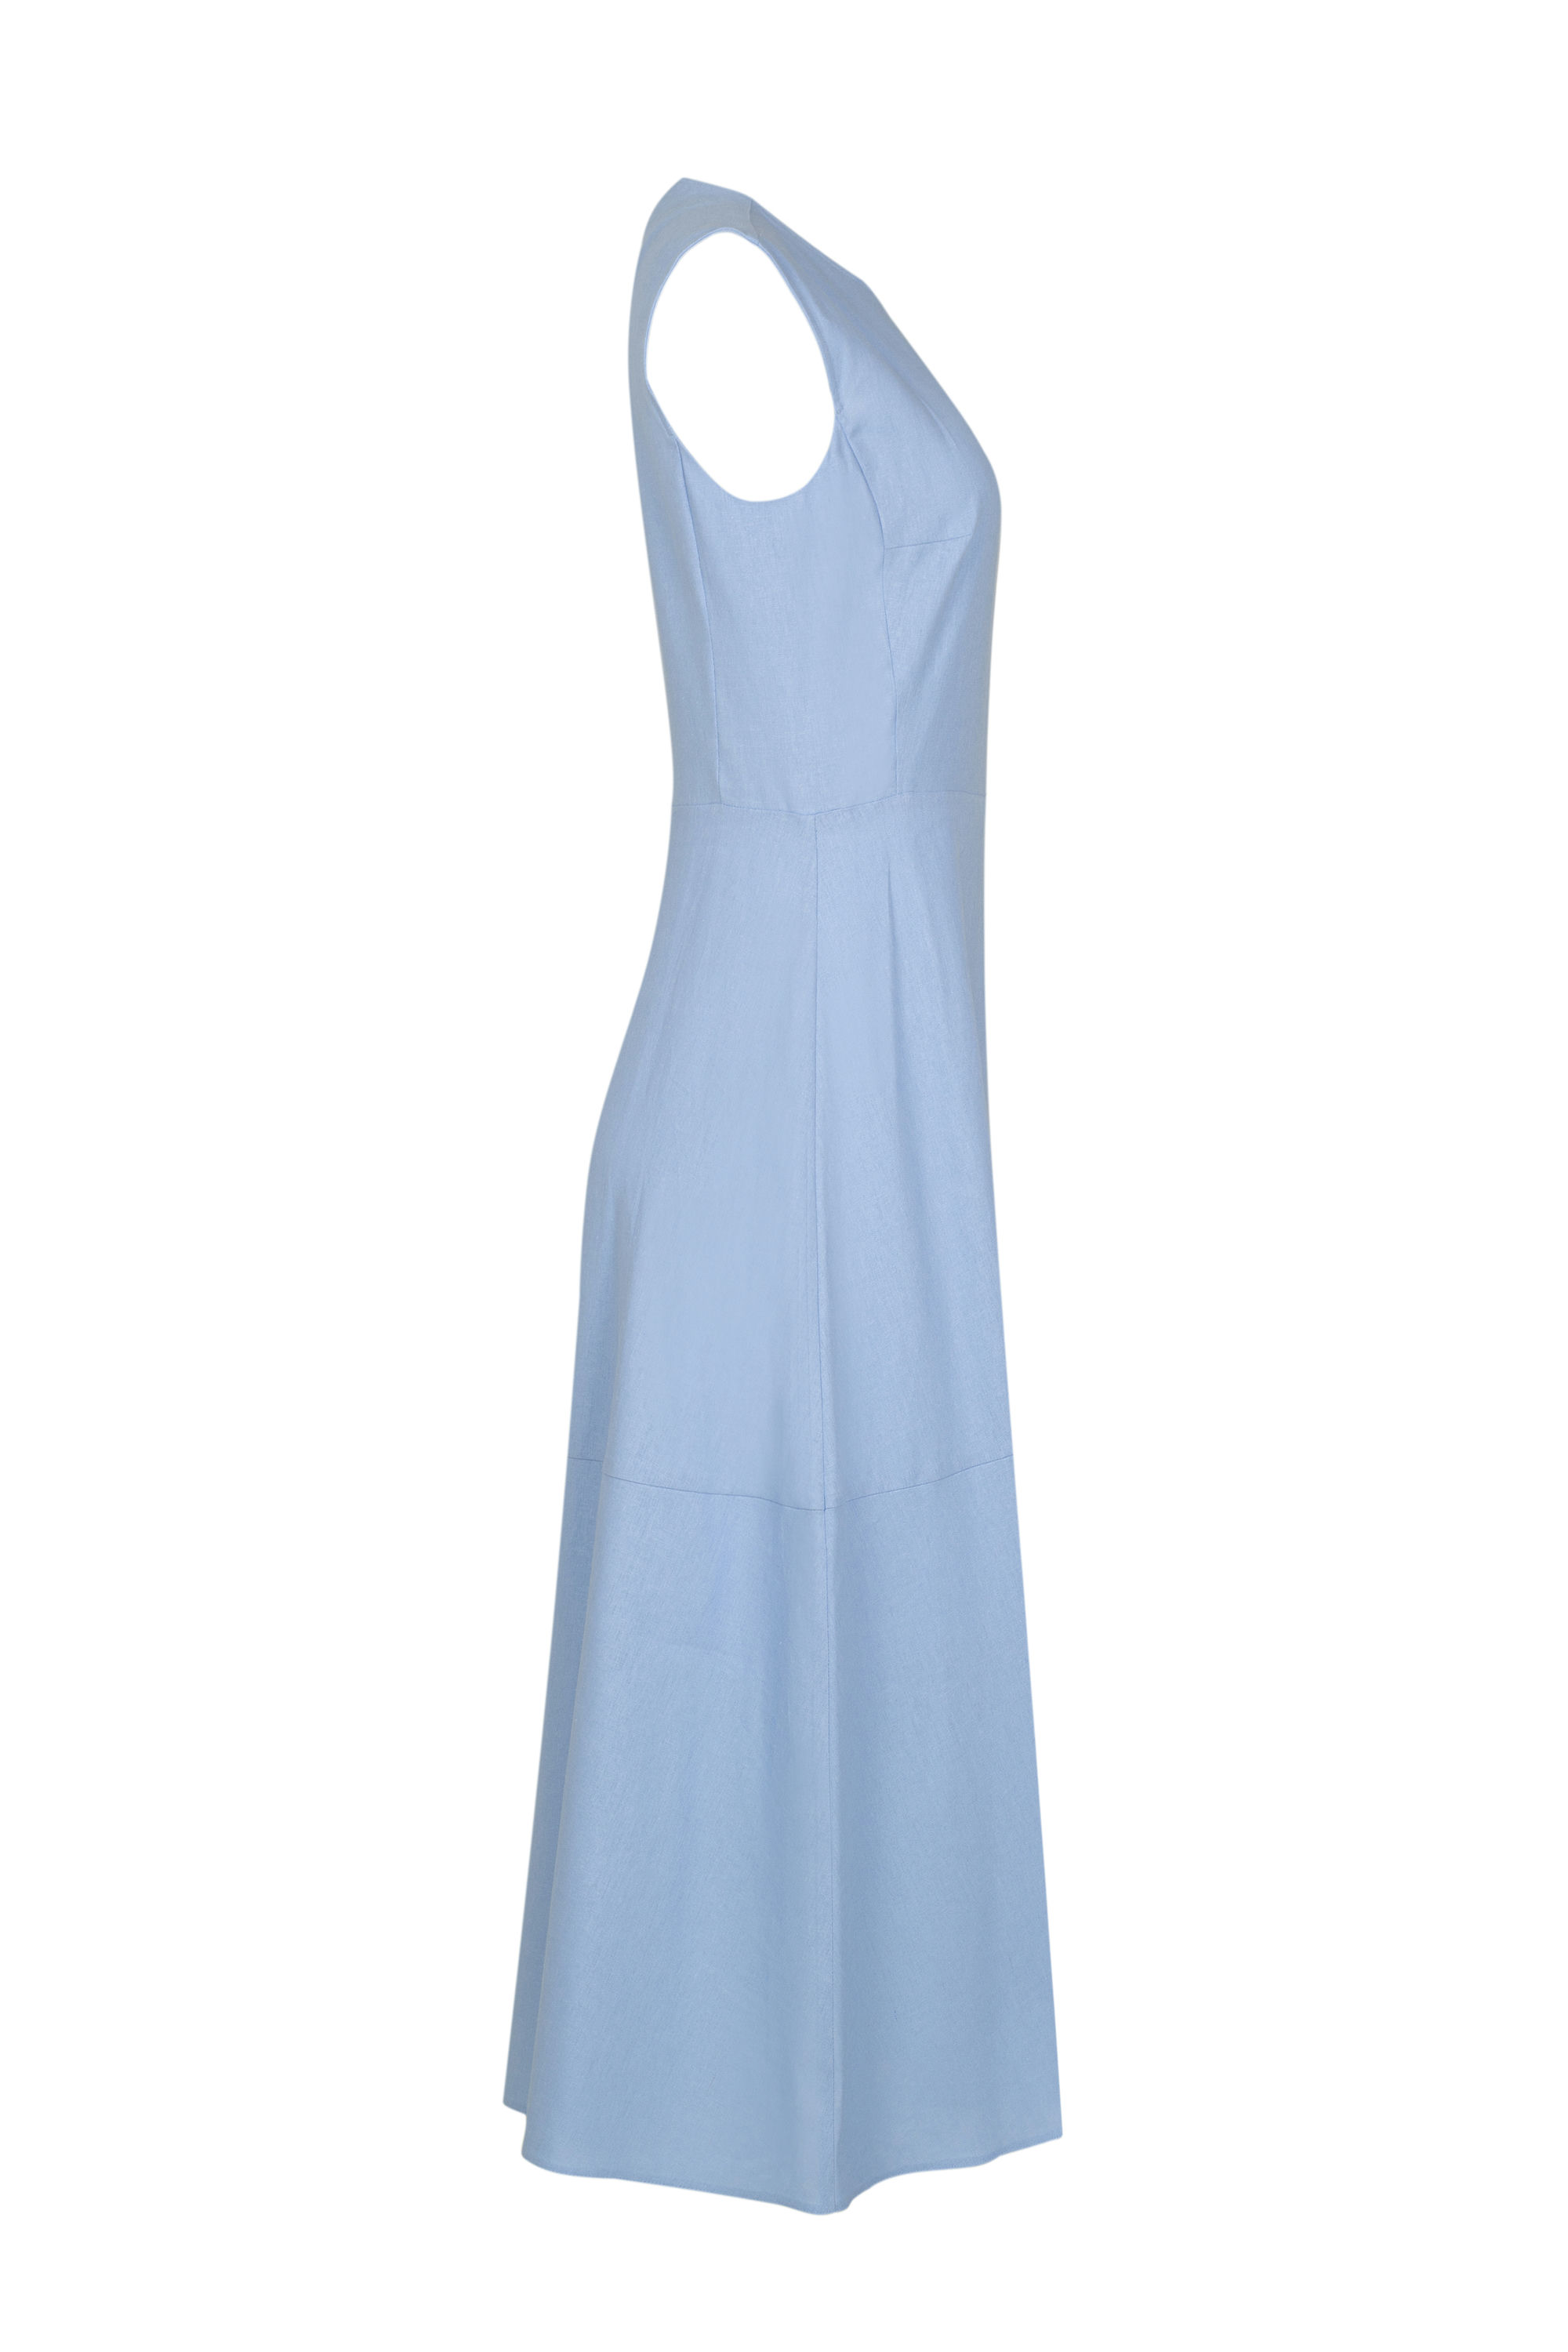 Платье женское 5К-12507-1